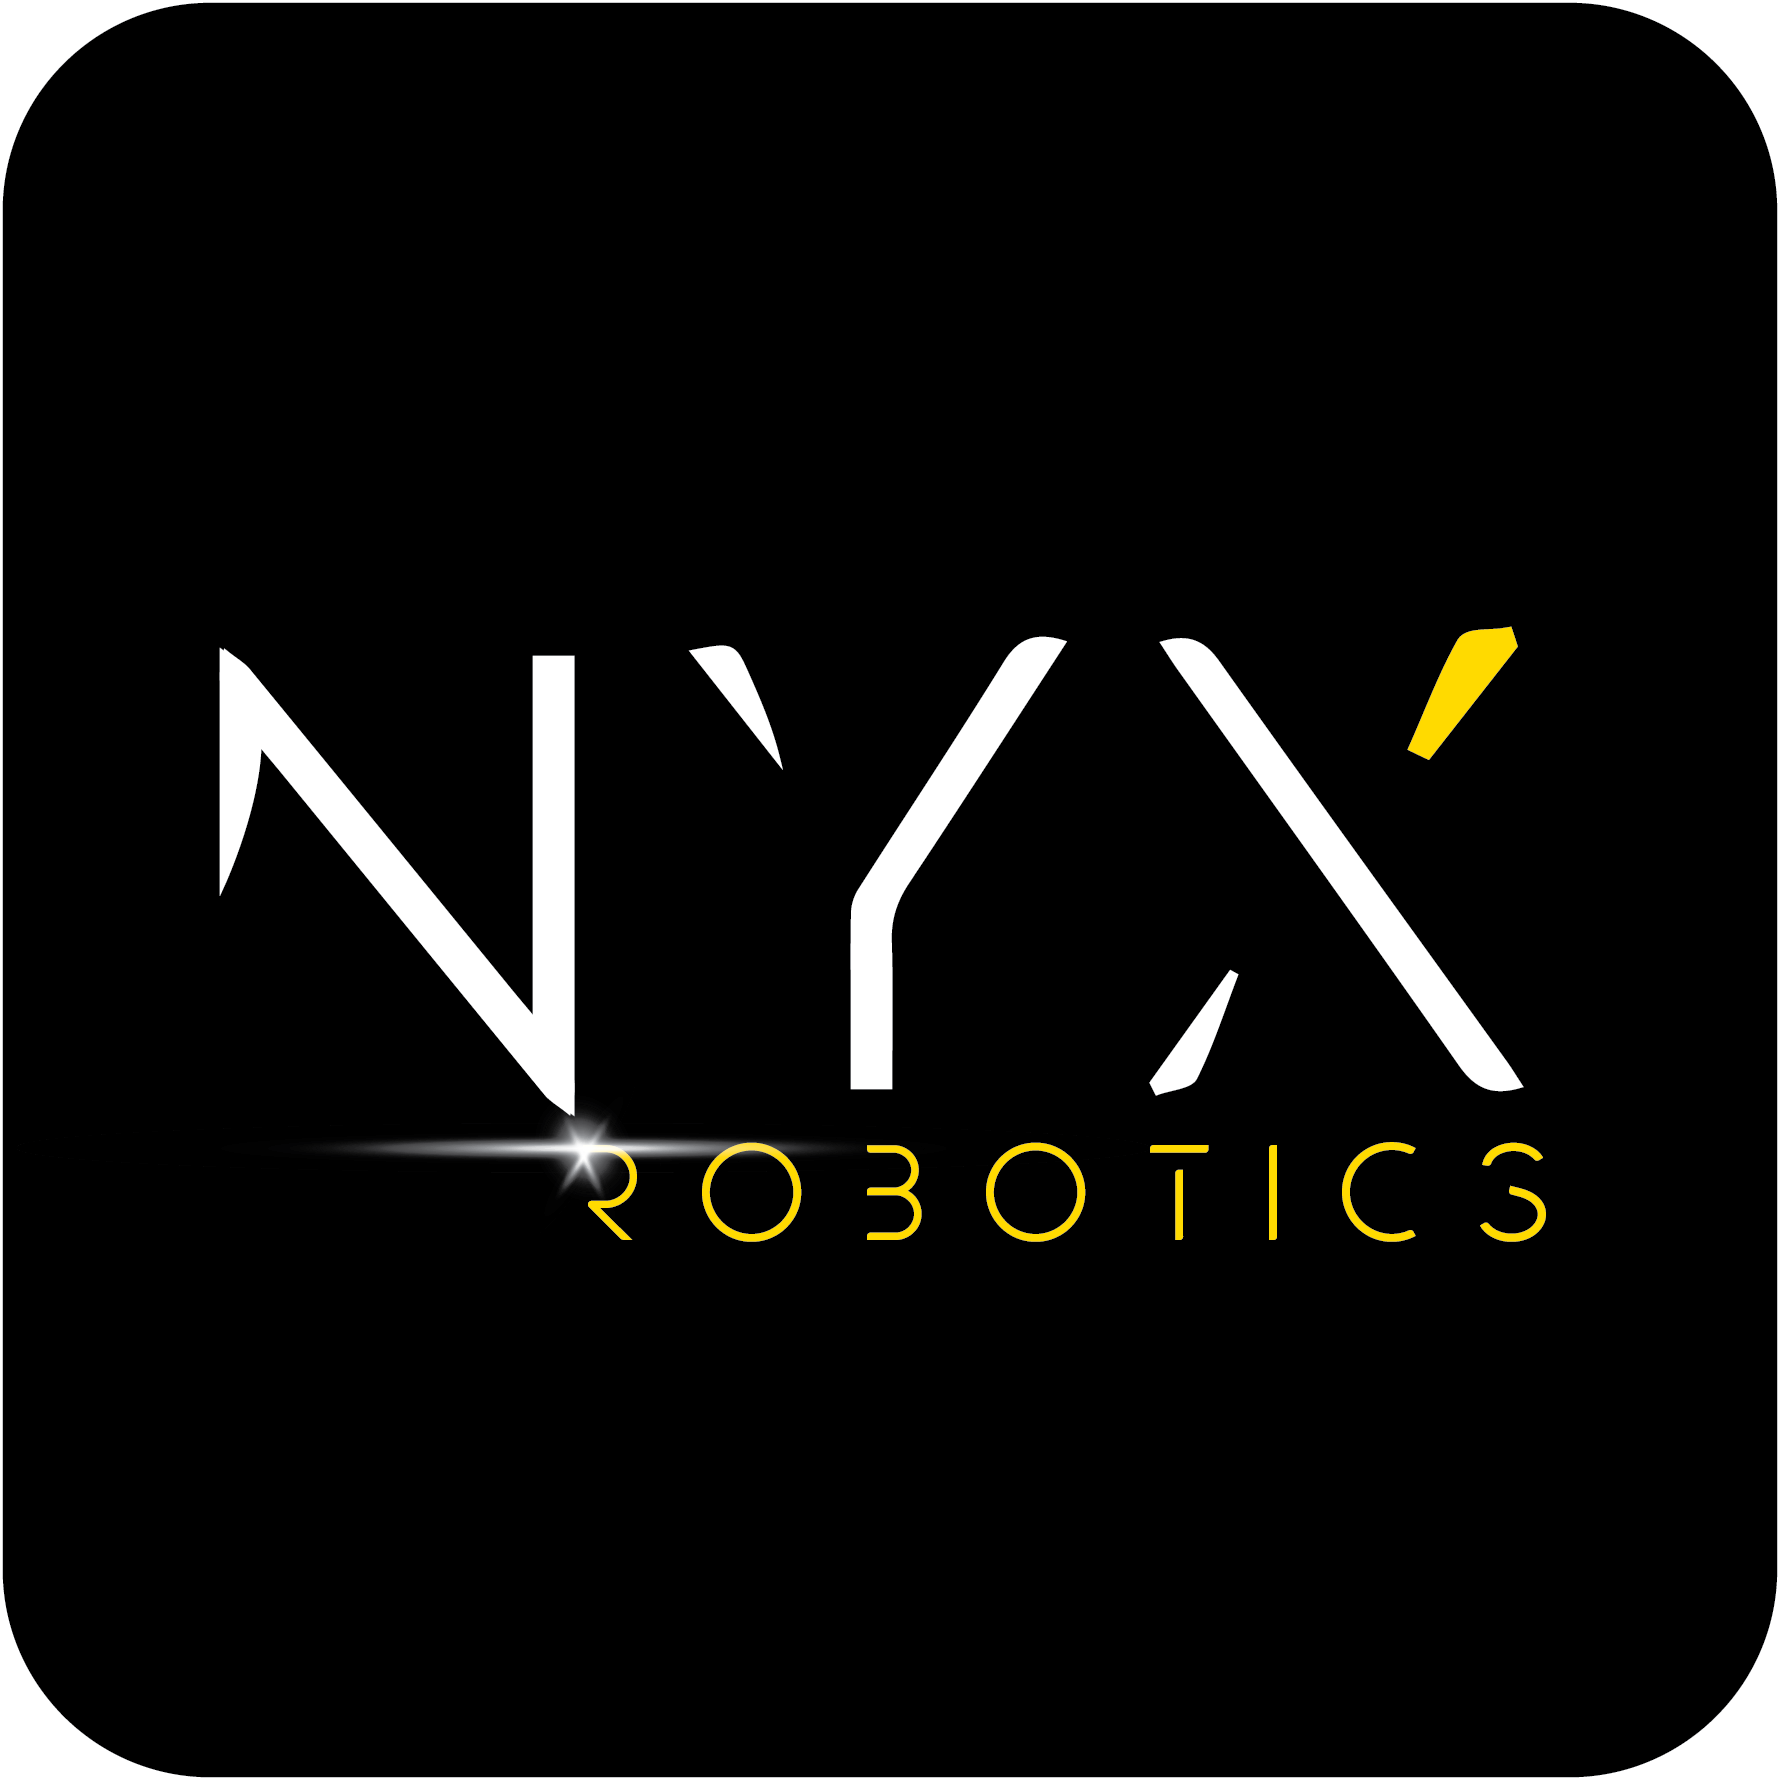 NYX ROBOTICS logo CMYK round sq 002